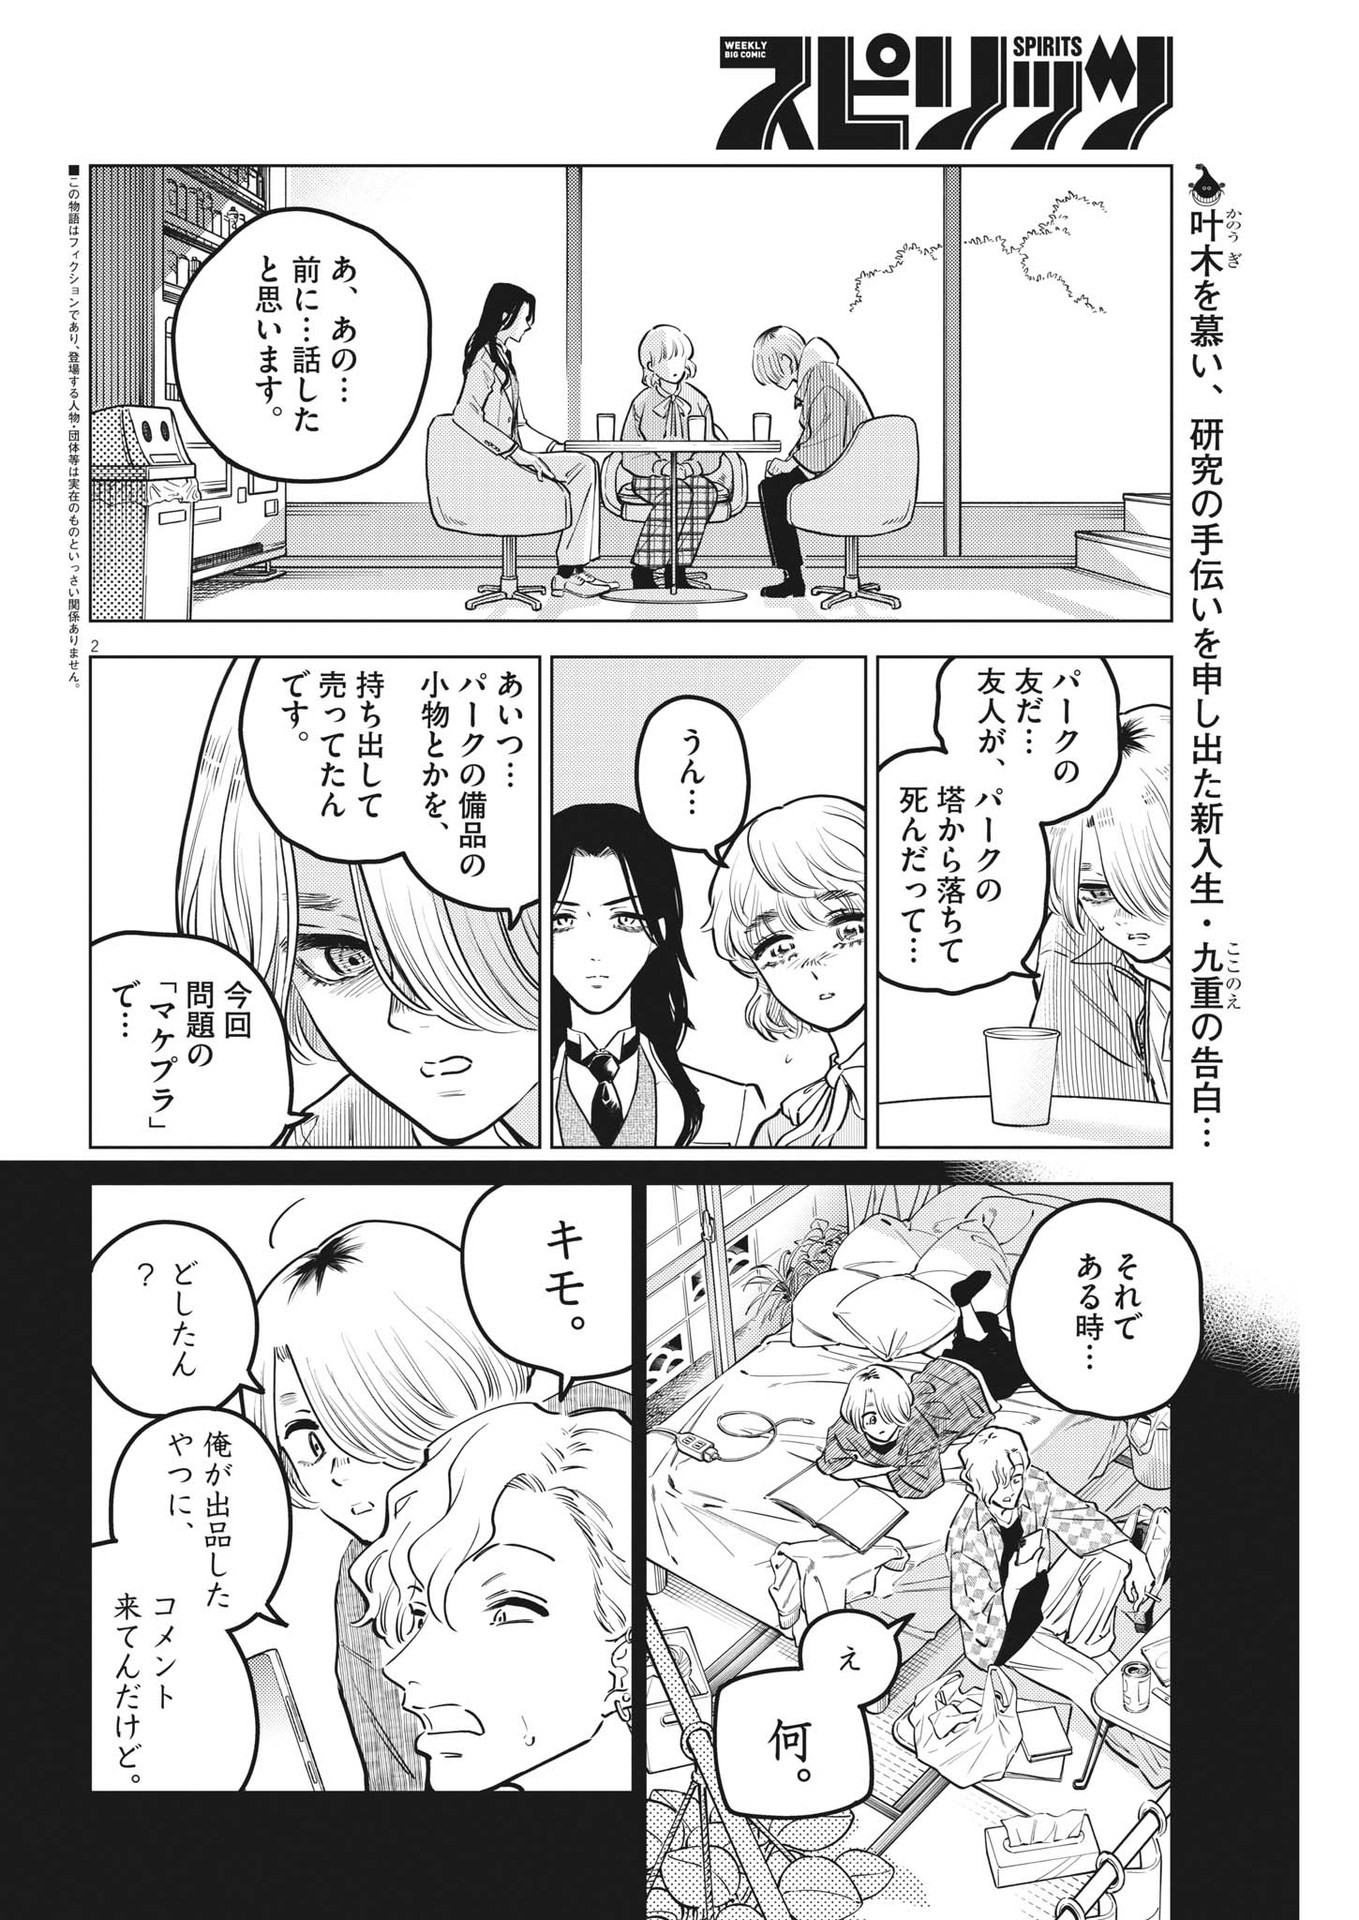 Shokubutsu Byourigaku wa Ashita no Kimi o Negau - Chapter 16 - Page 2